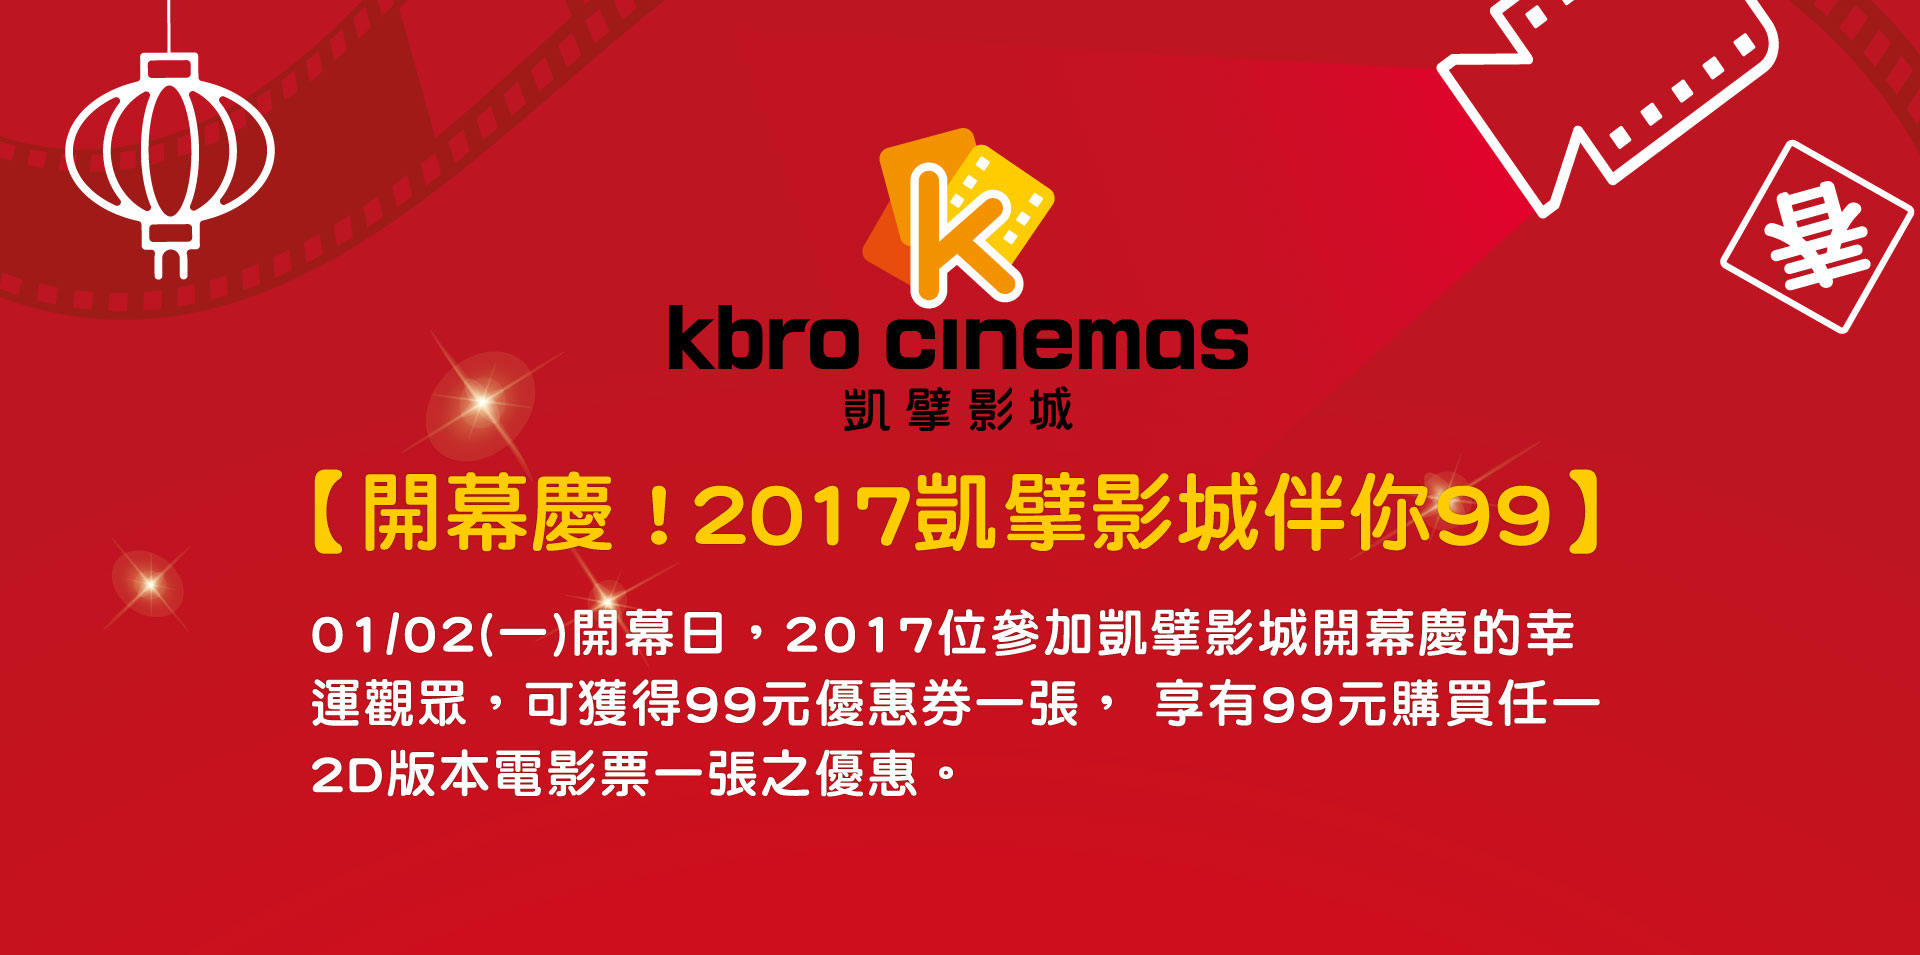 凱擘影城-Kbro Cinemas